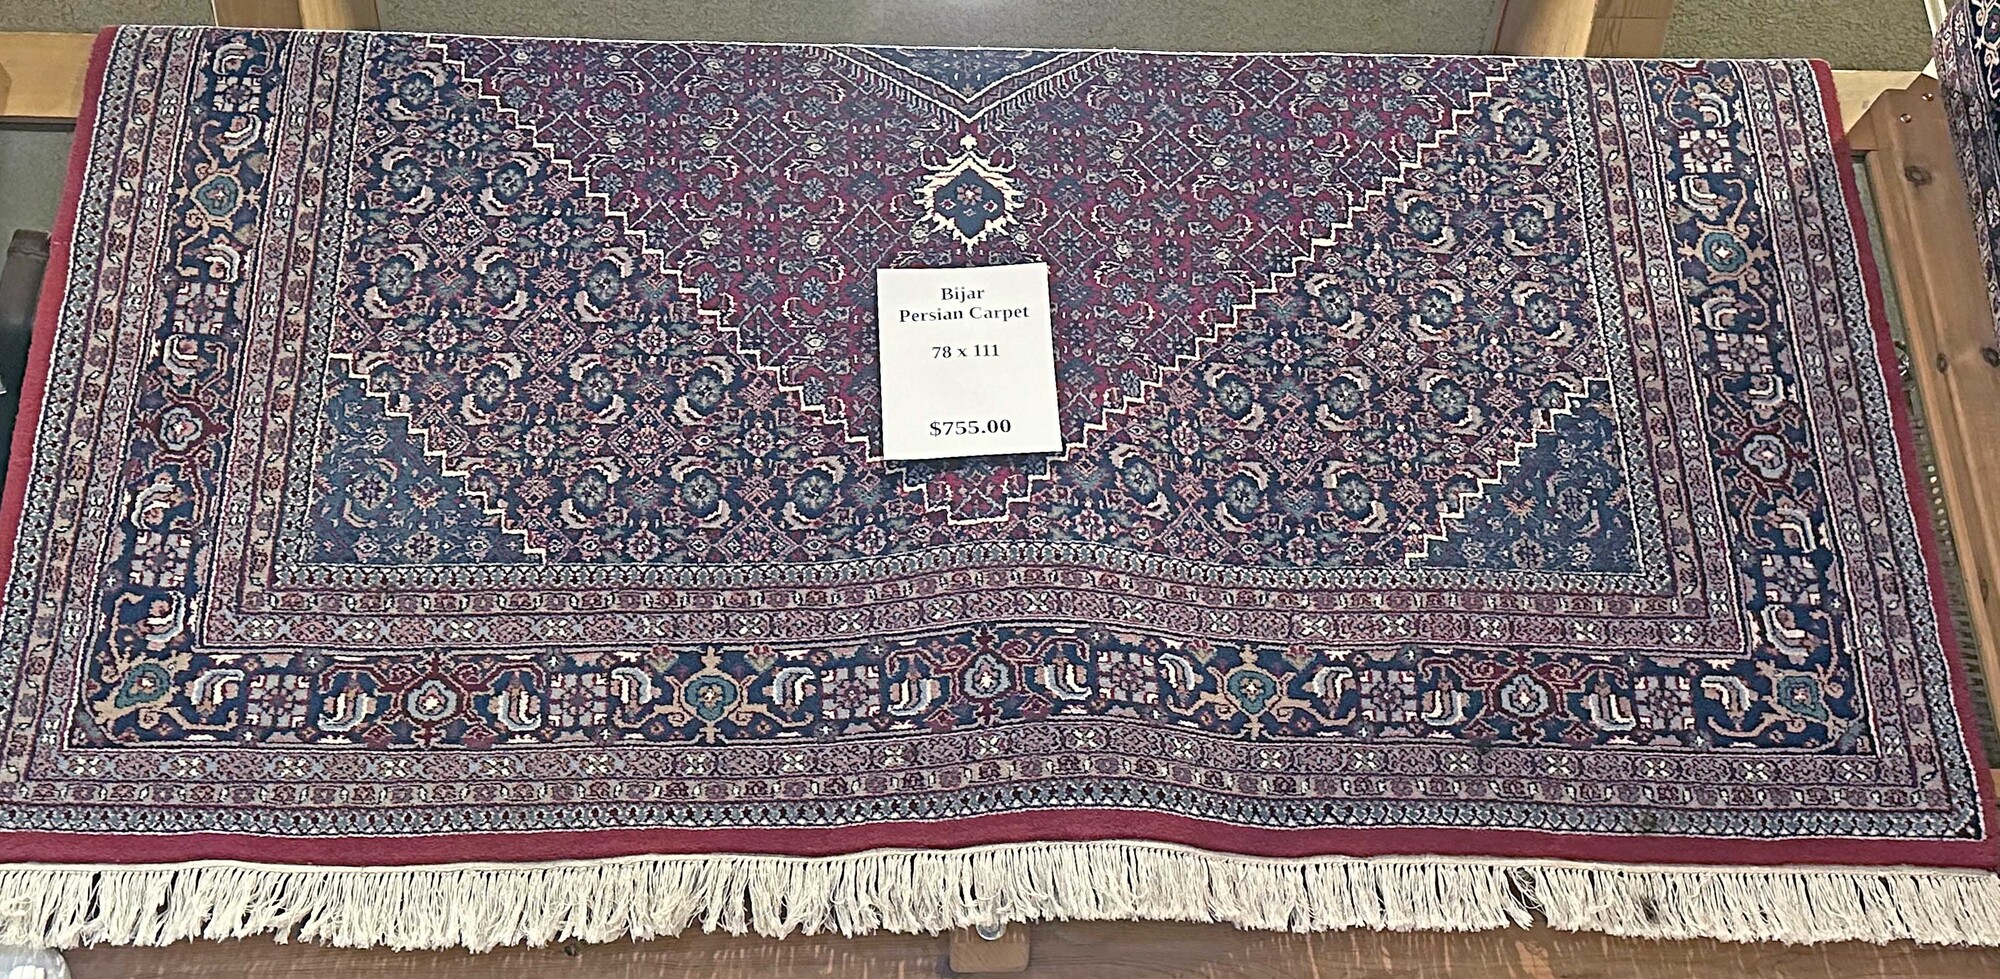 Bijar Persian Carpet

78 In X 111 In
Maroon Multi Color